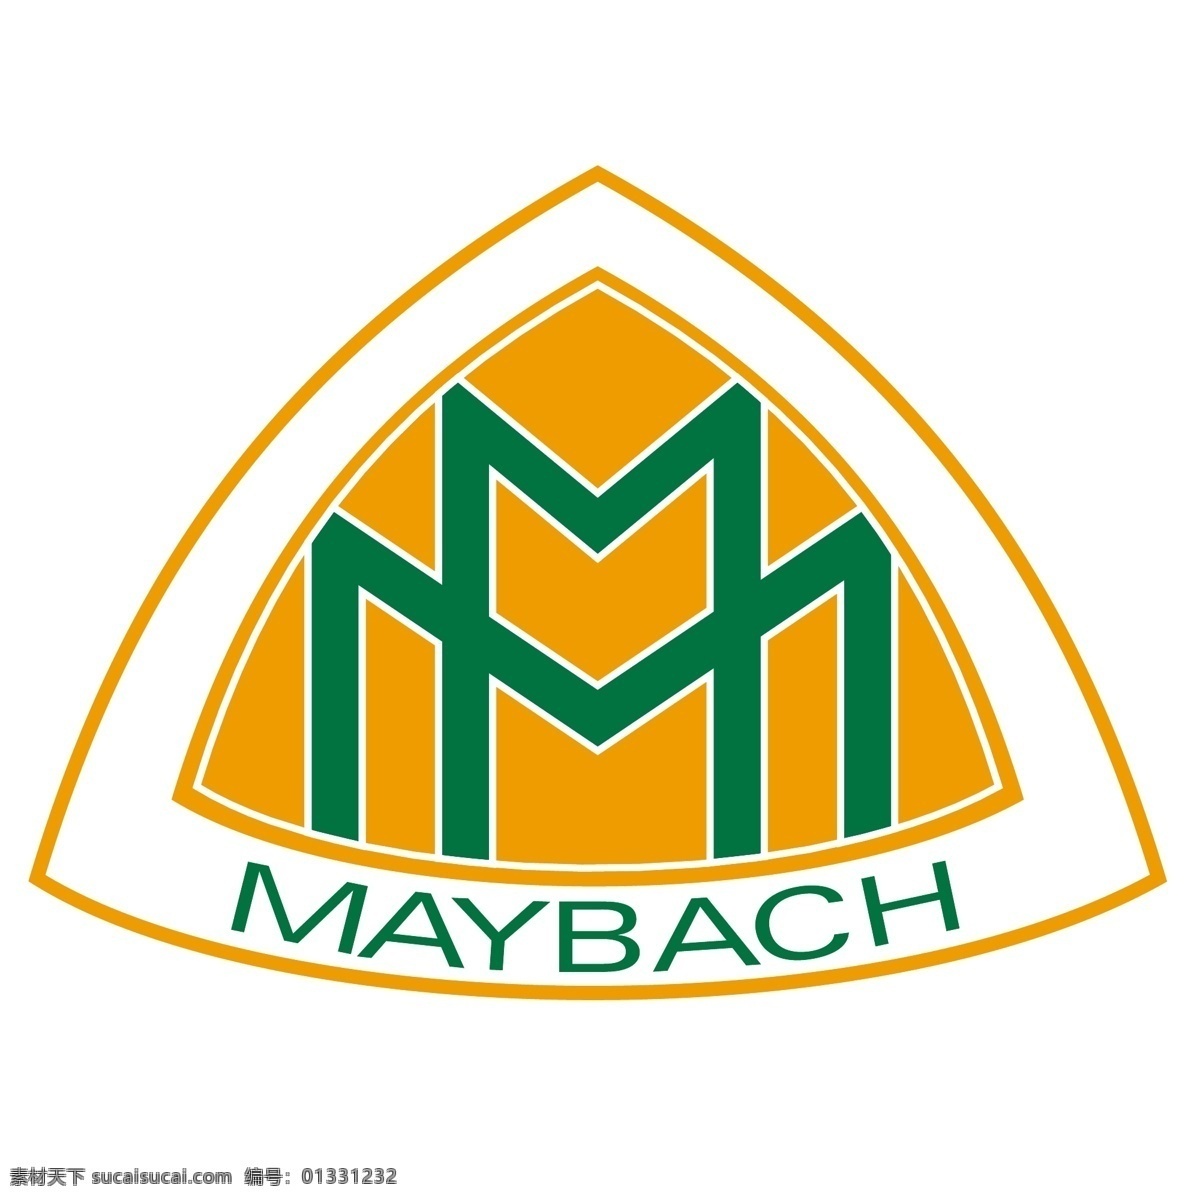 迈巴赫 迈 巴赫 logo 矢量 矢量迈巴赫 标志 标志迈巴赫 迈巴赫标识 迈巴赫eps 矢量图 建筑家居